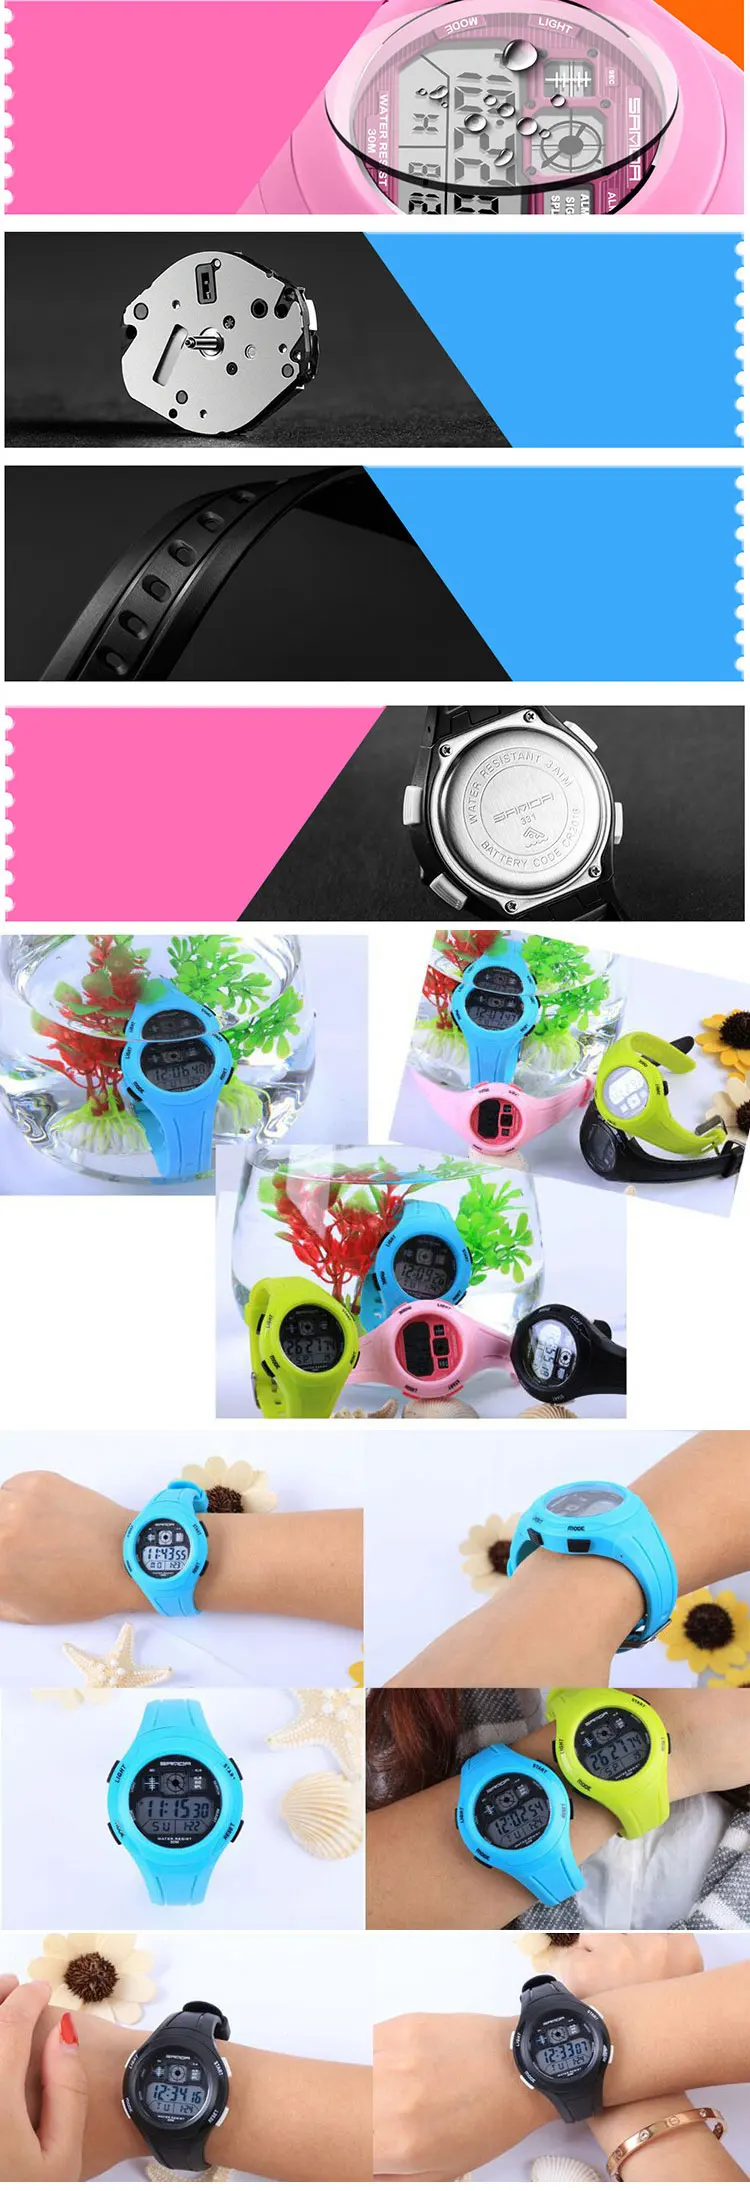 SANDA Топ светодиодный цифровые детские часы для девочек и мальчиков часы детские спортивные наручные часы электронные для девочек и мальчиков подарок сюрприз